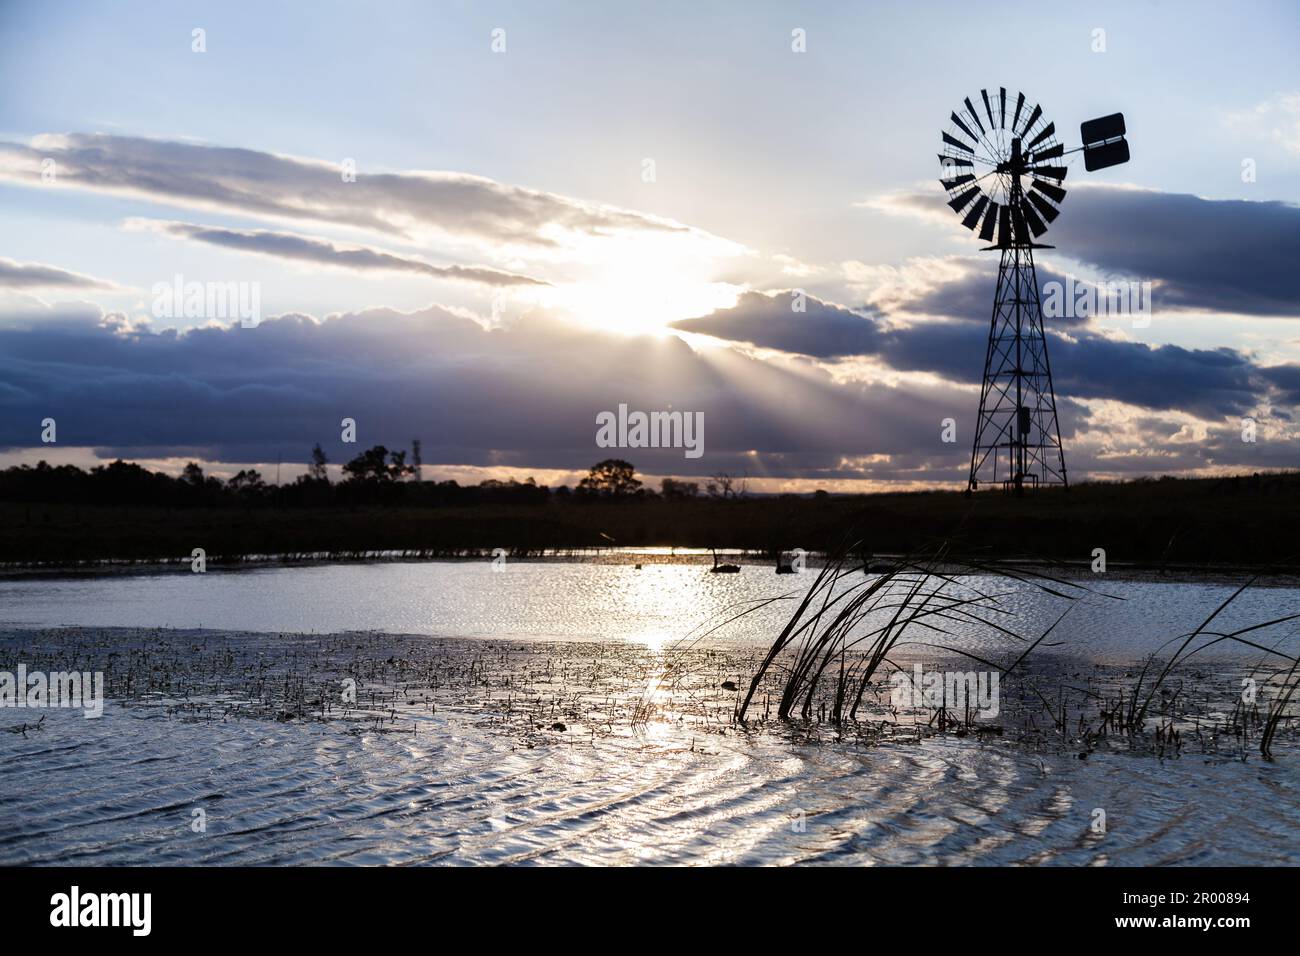 Le soir, la lumière du soleil se brise à travers le nuage sur la ferme australienne avec silhouette de moulin à vent Banque D'Images